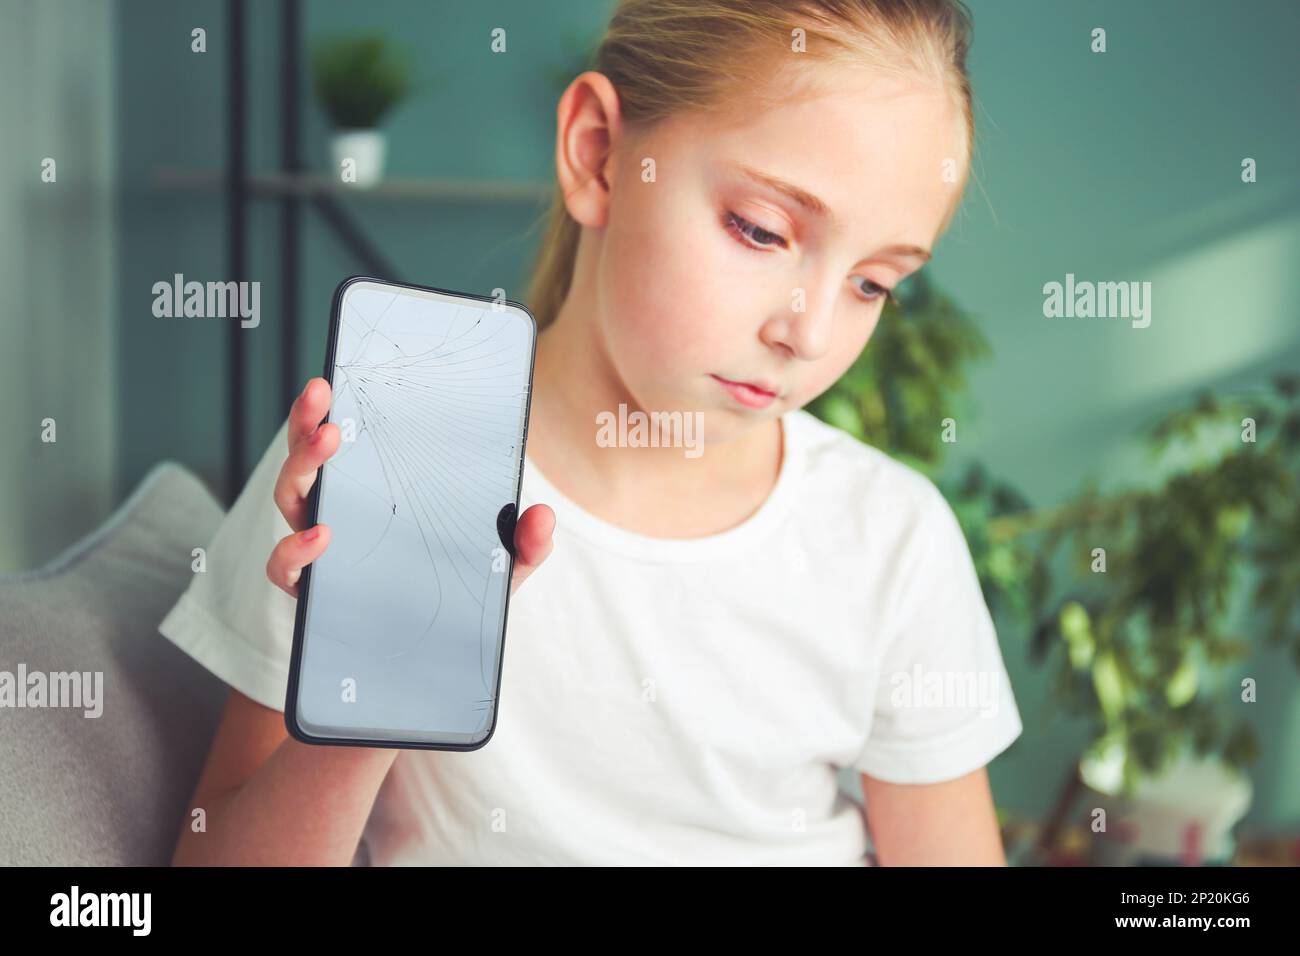 Ein trauriges Mädchen sitzt mit einem kaputten Handy. Der Hauptfokus liegt auf dem Telefonbildschirm. Getöntes Bild. Stockfoto